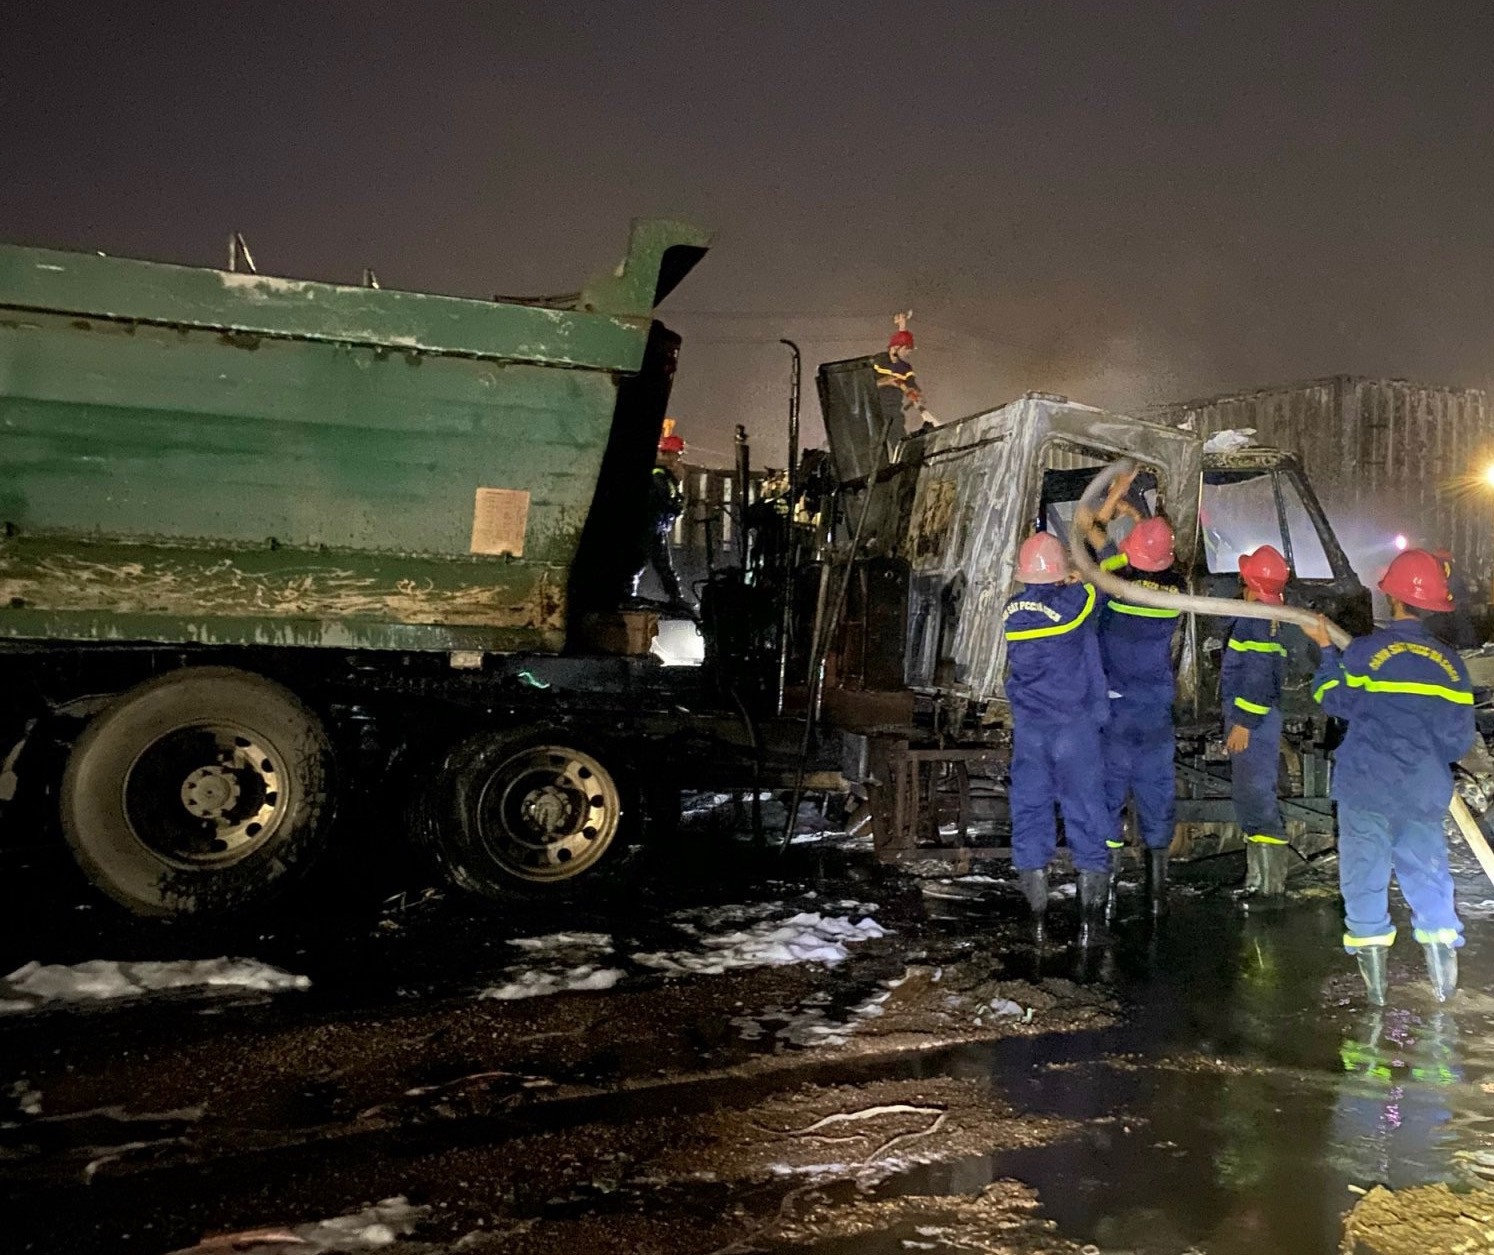 Bình Định: Cháy lớn ở bãi đậu xe, 4 đầu xe kéo hư hỏng nặng - Ảnh 4